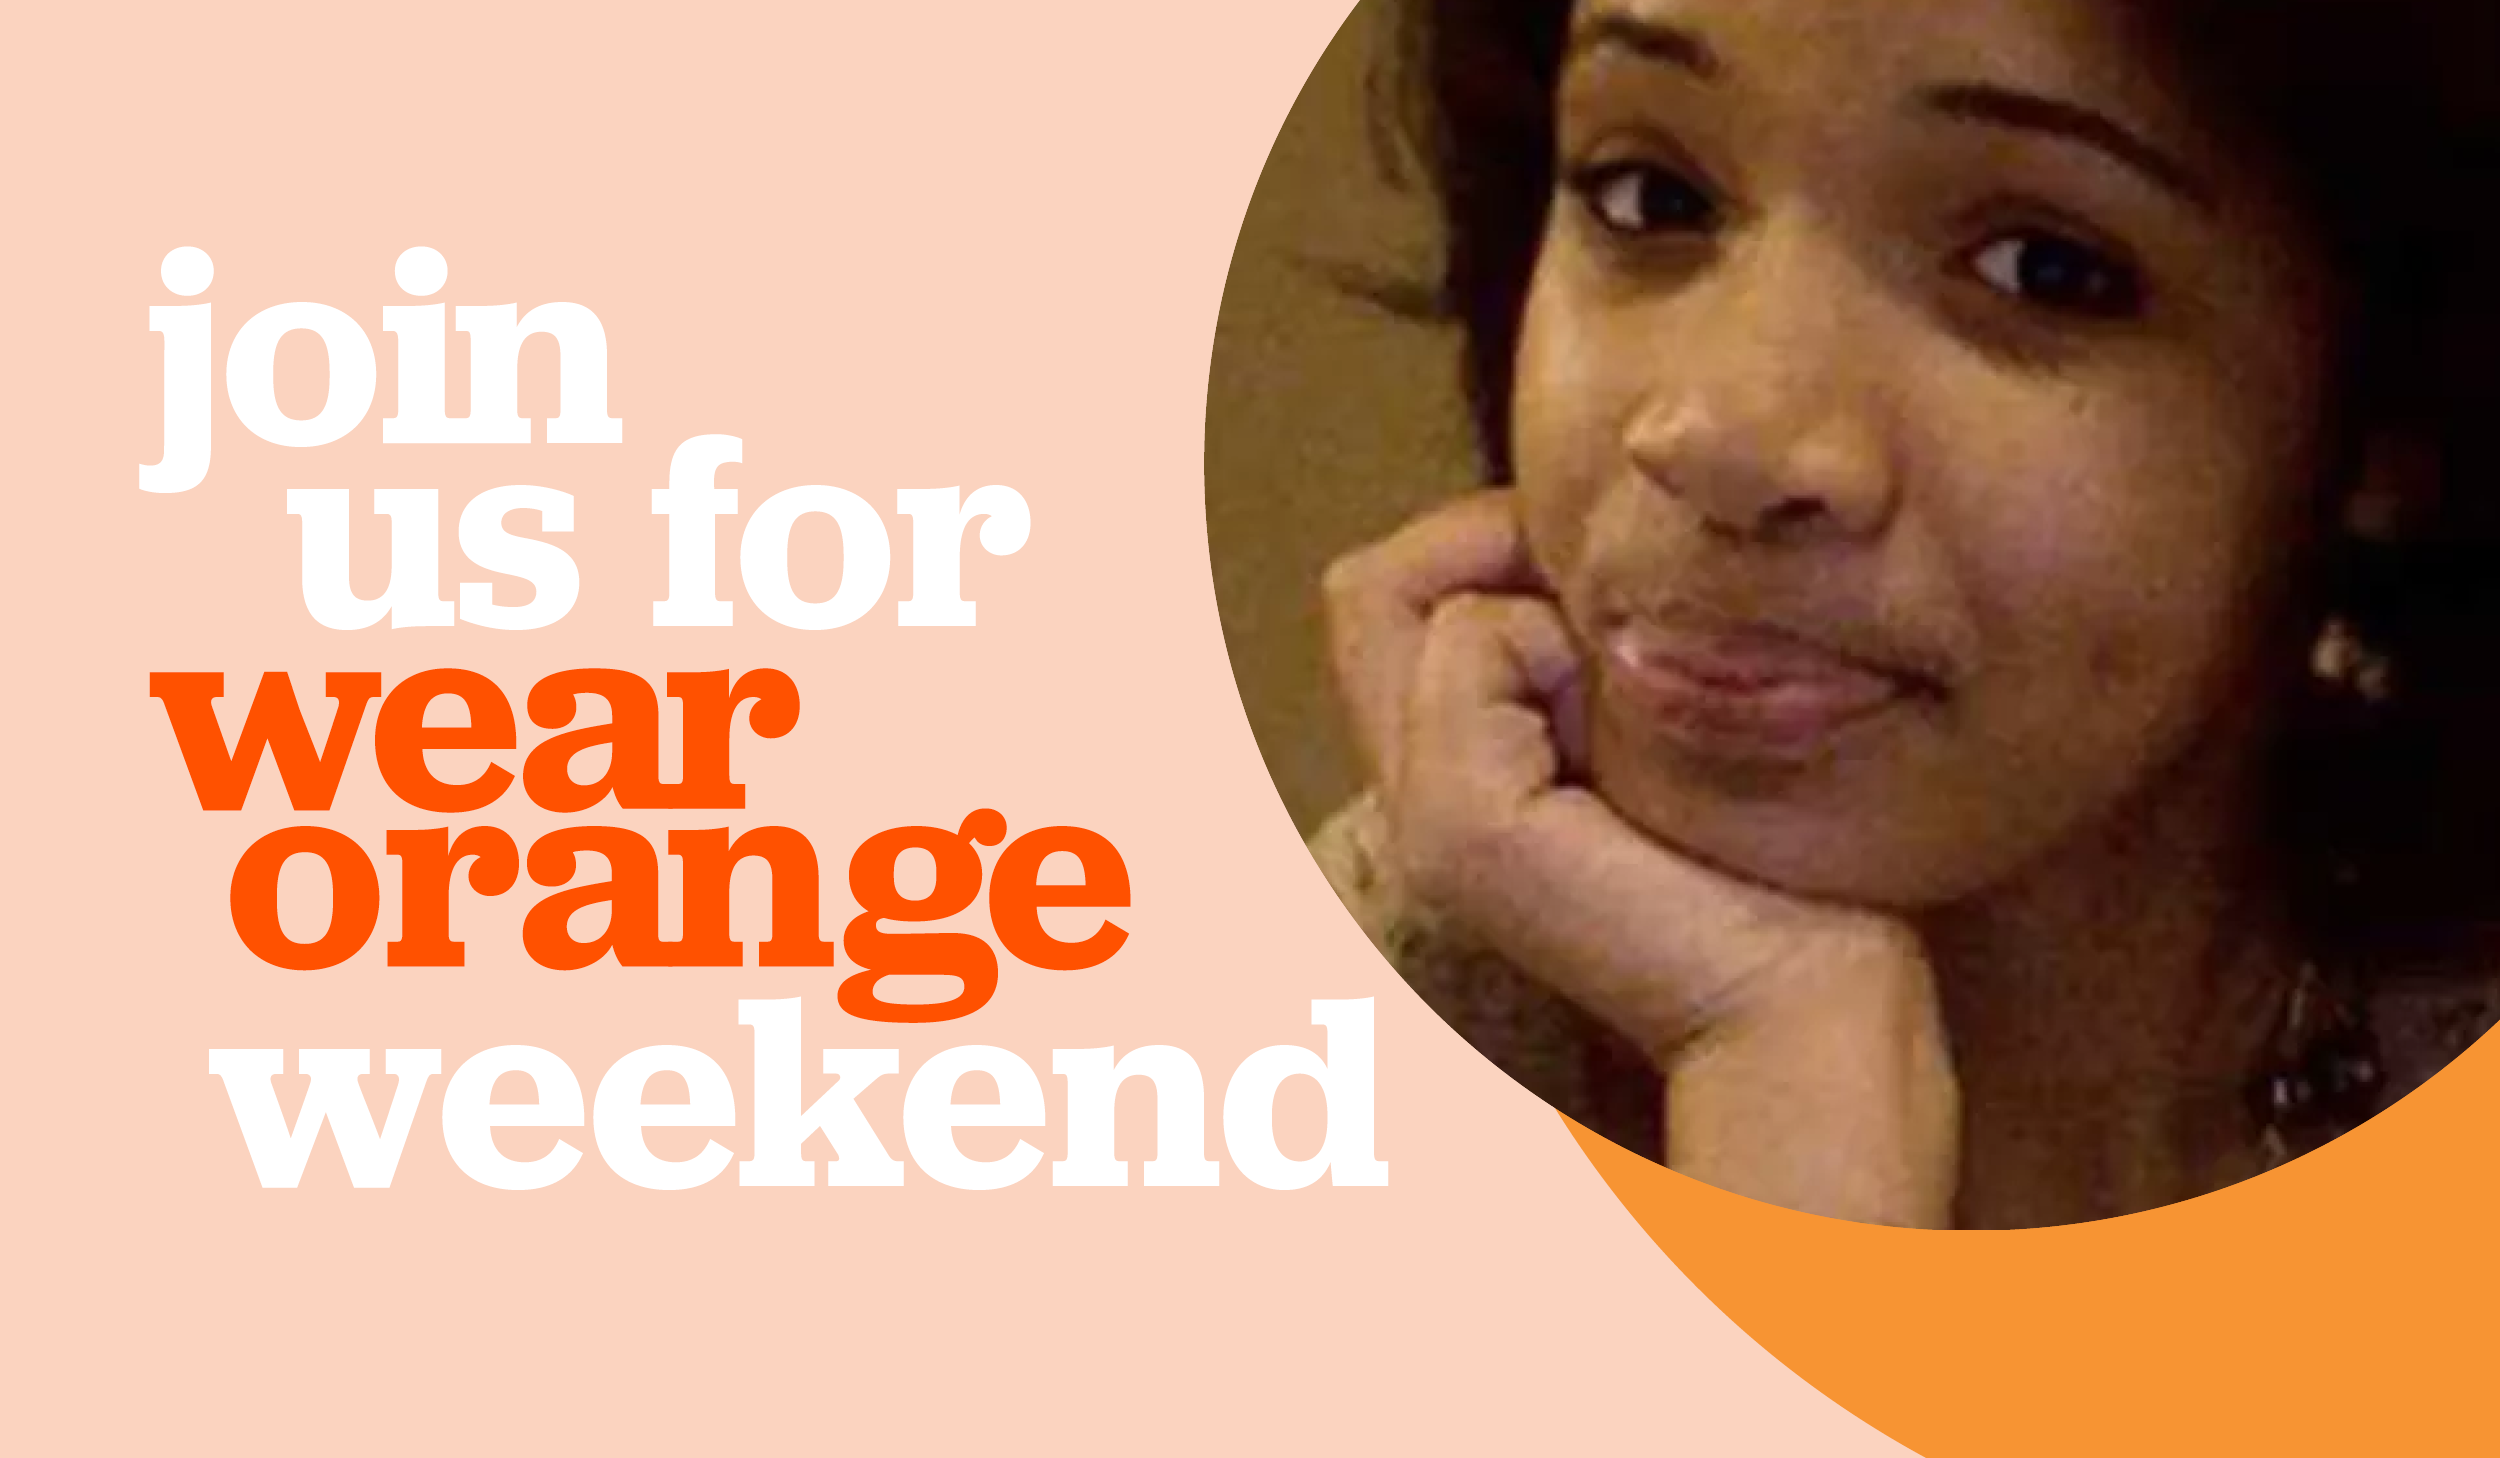 Join us for Wear Orange Weekend.